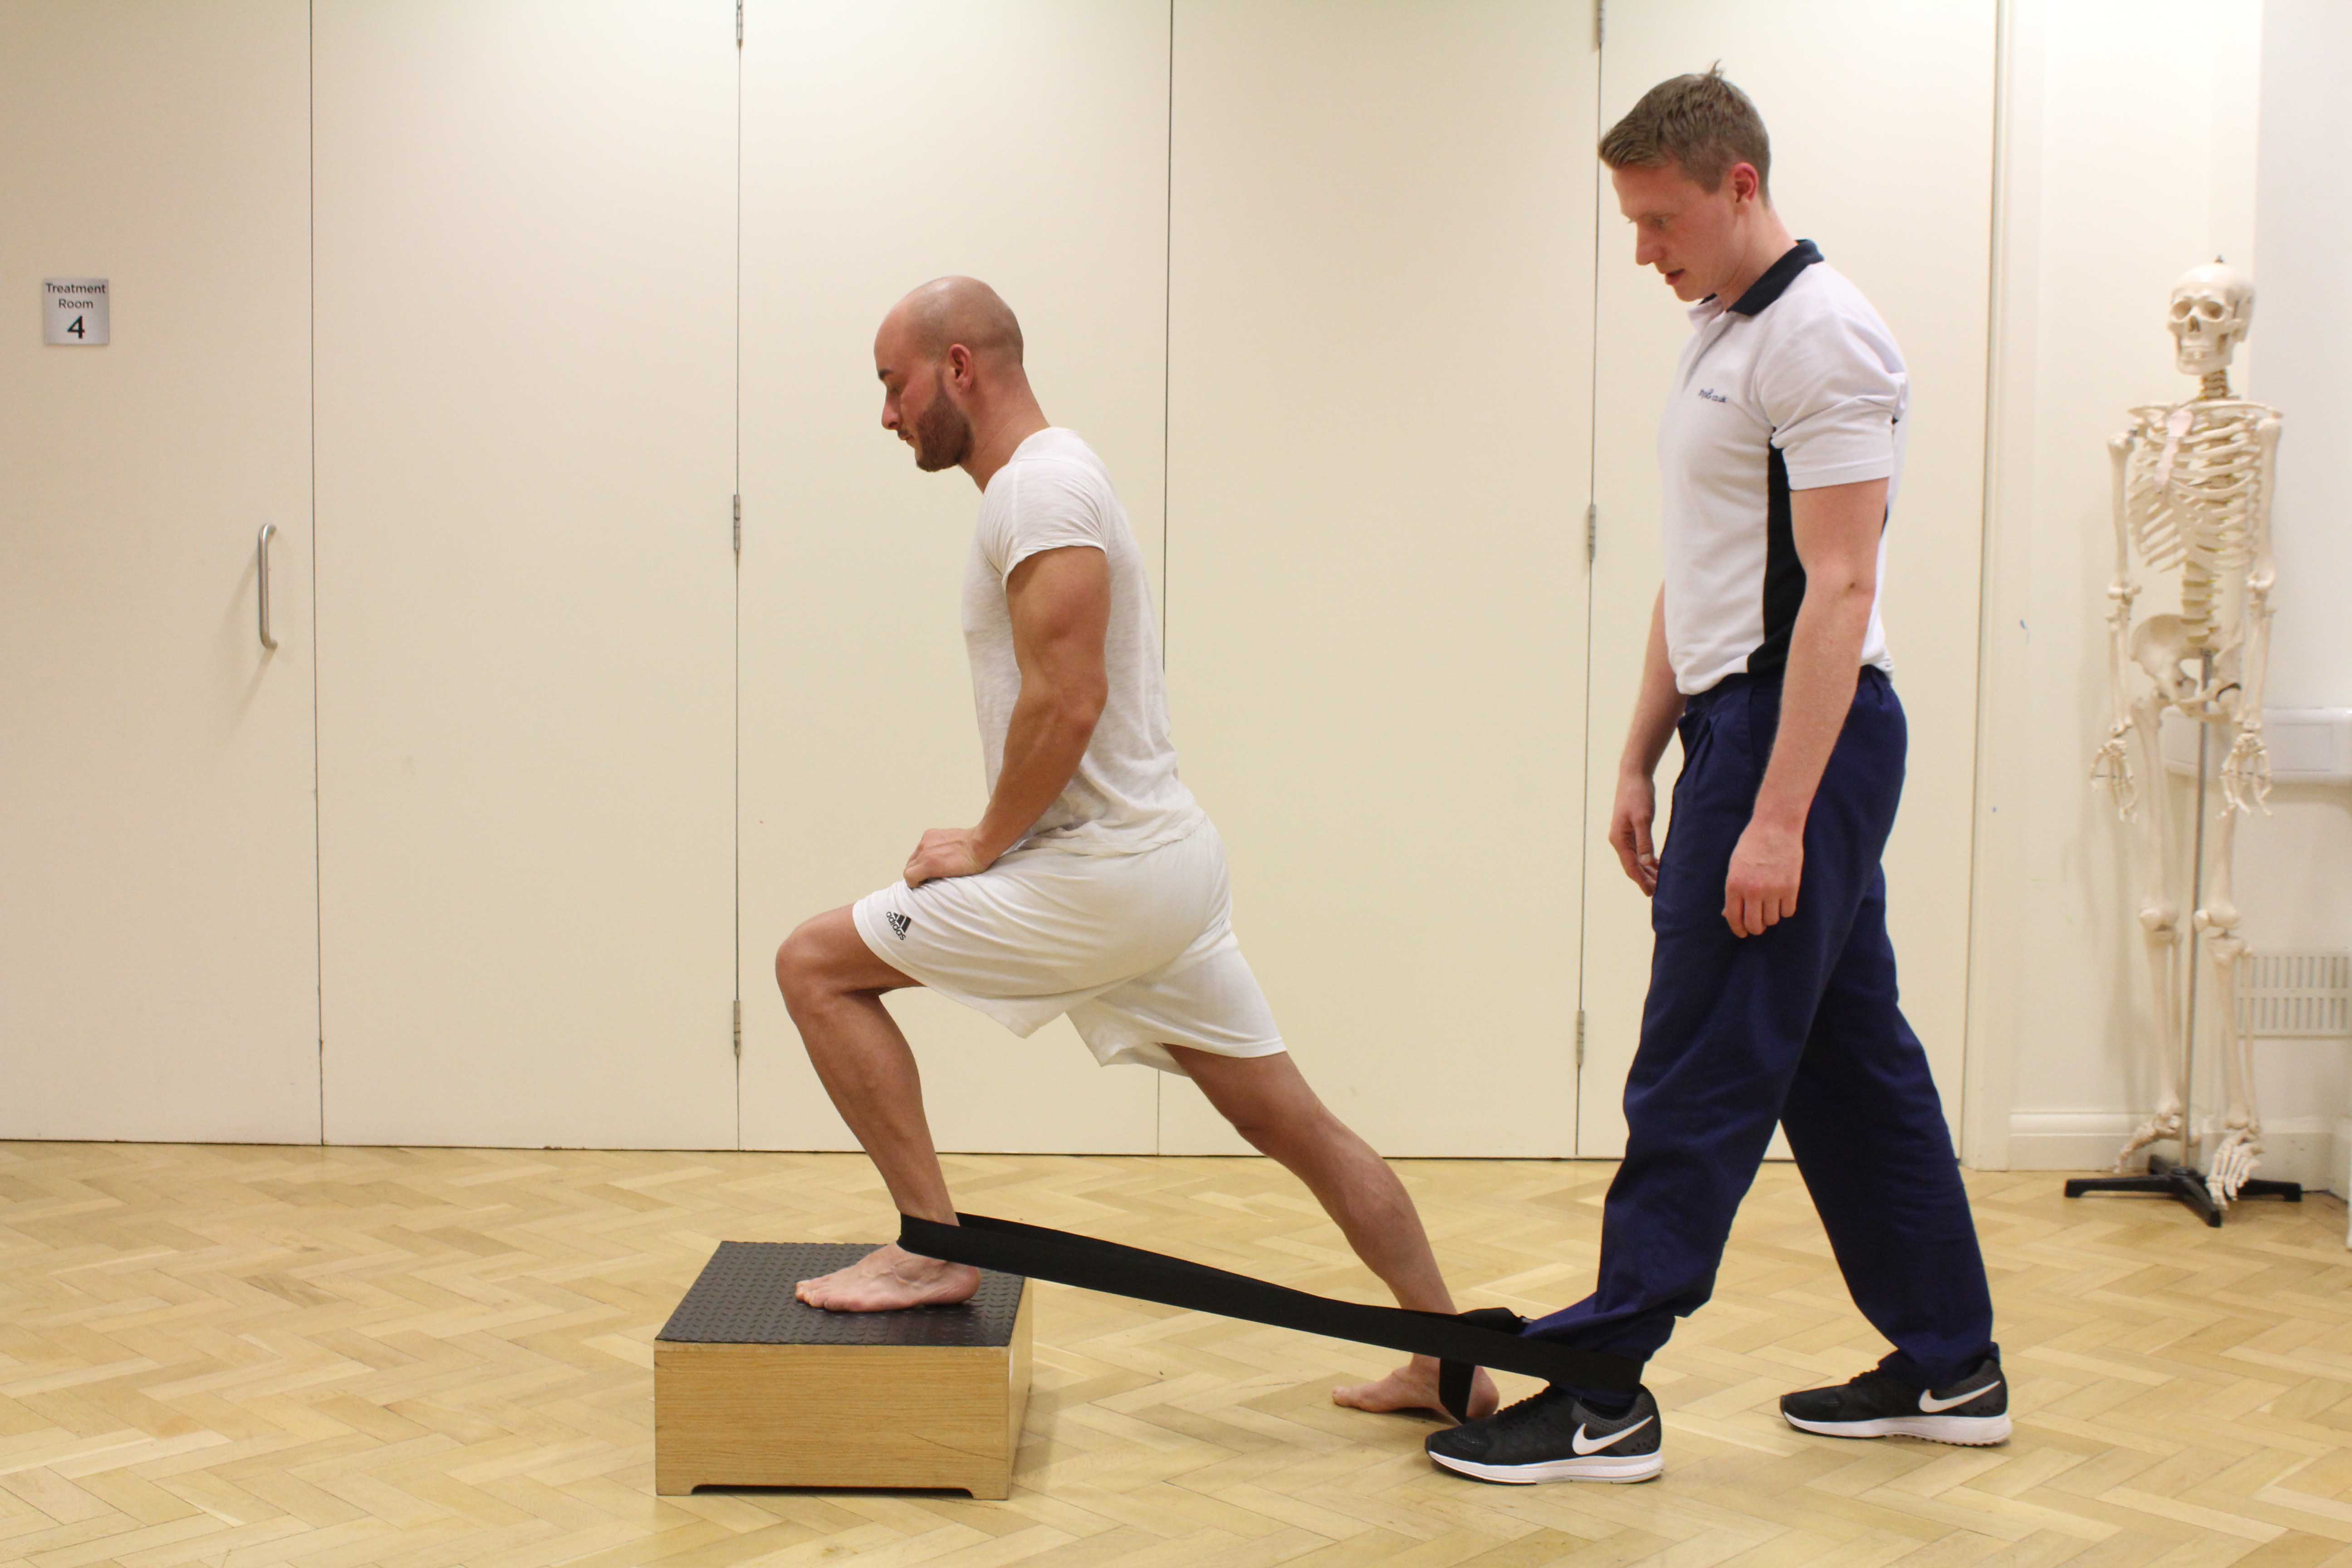 Balance and co-ordination exercises using island blocks